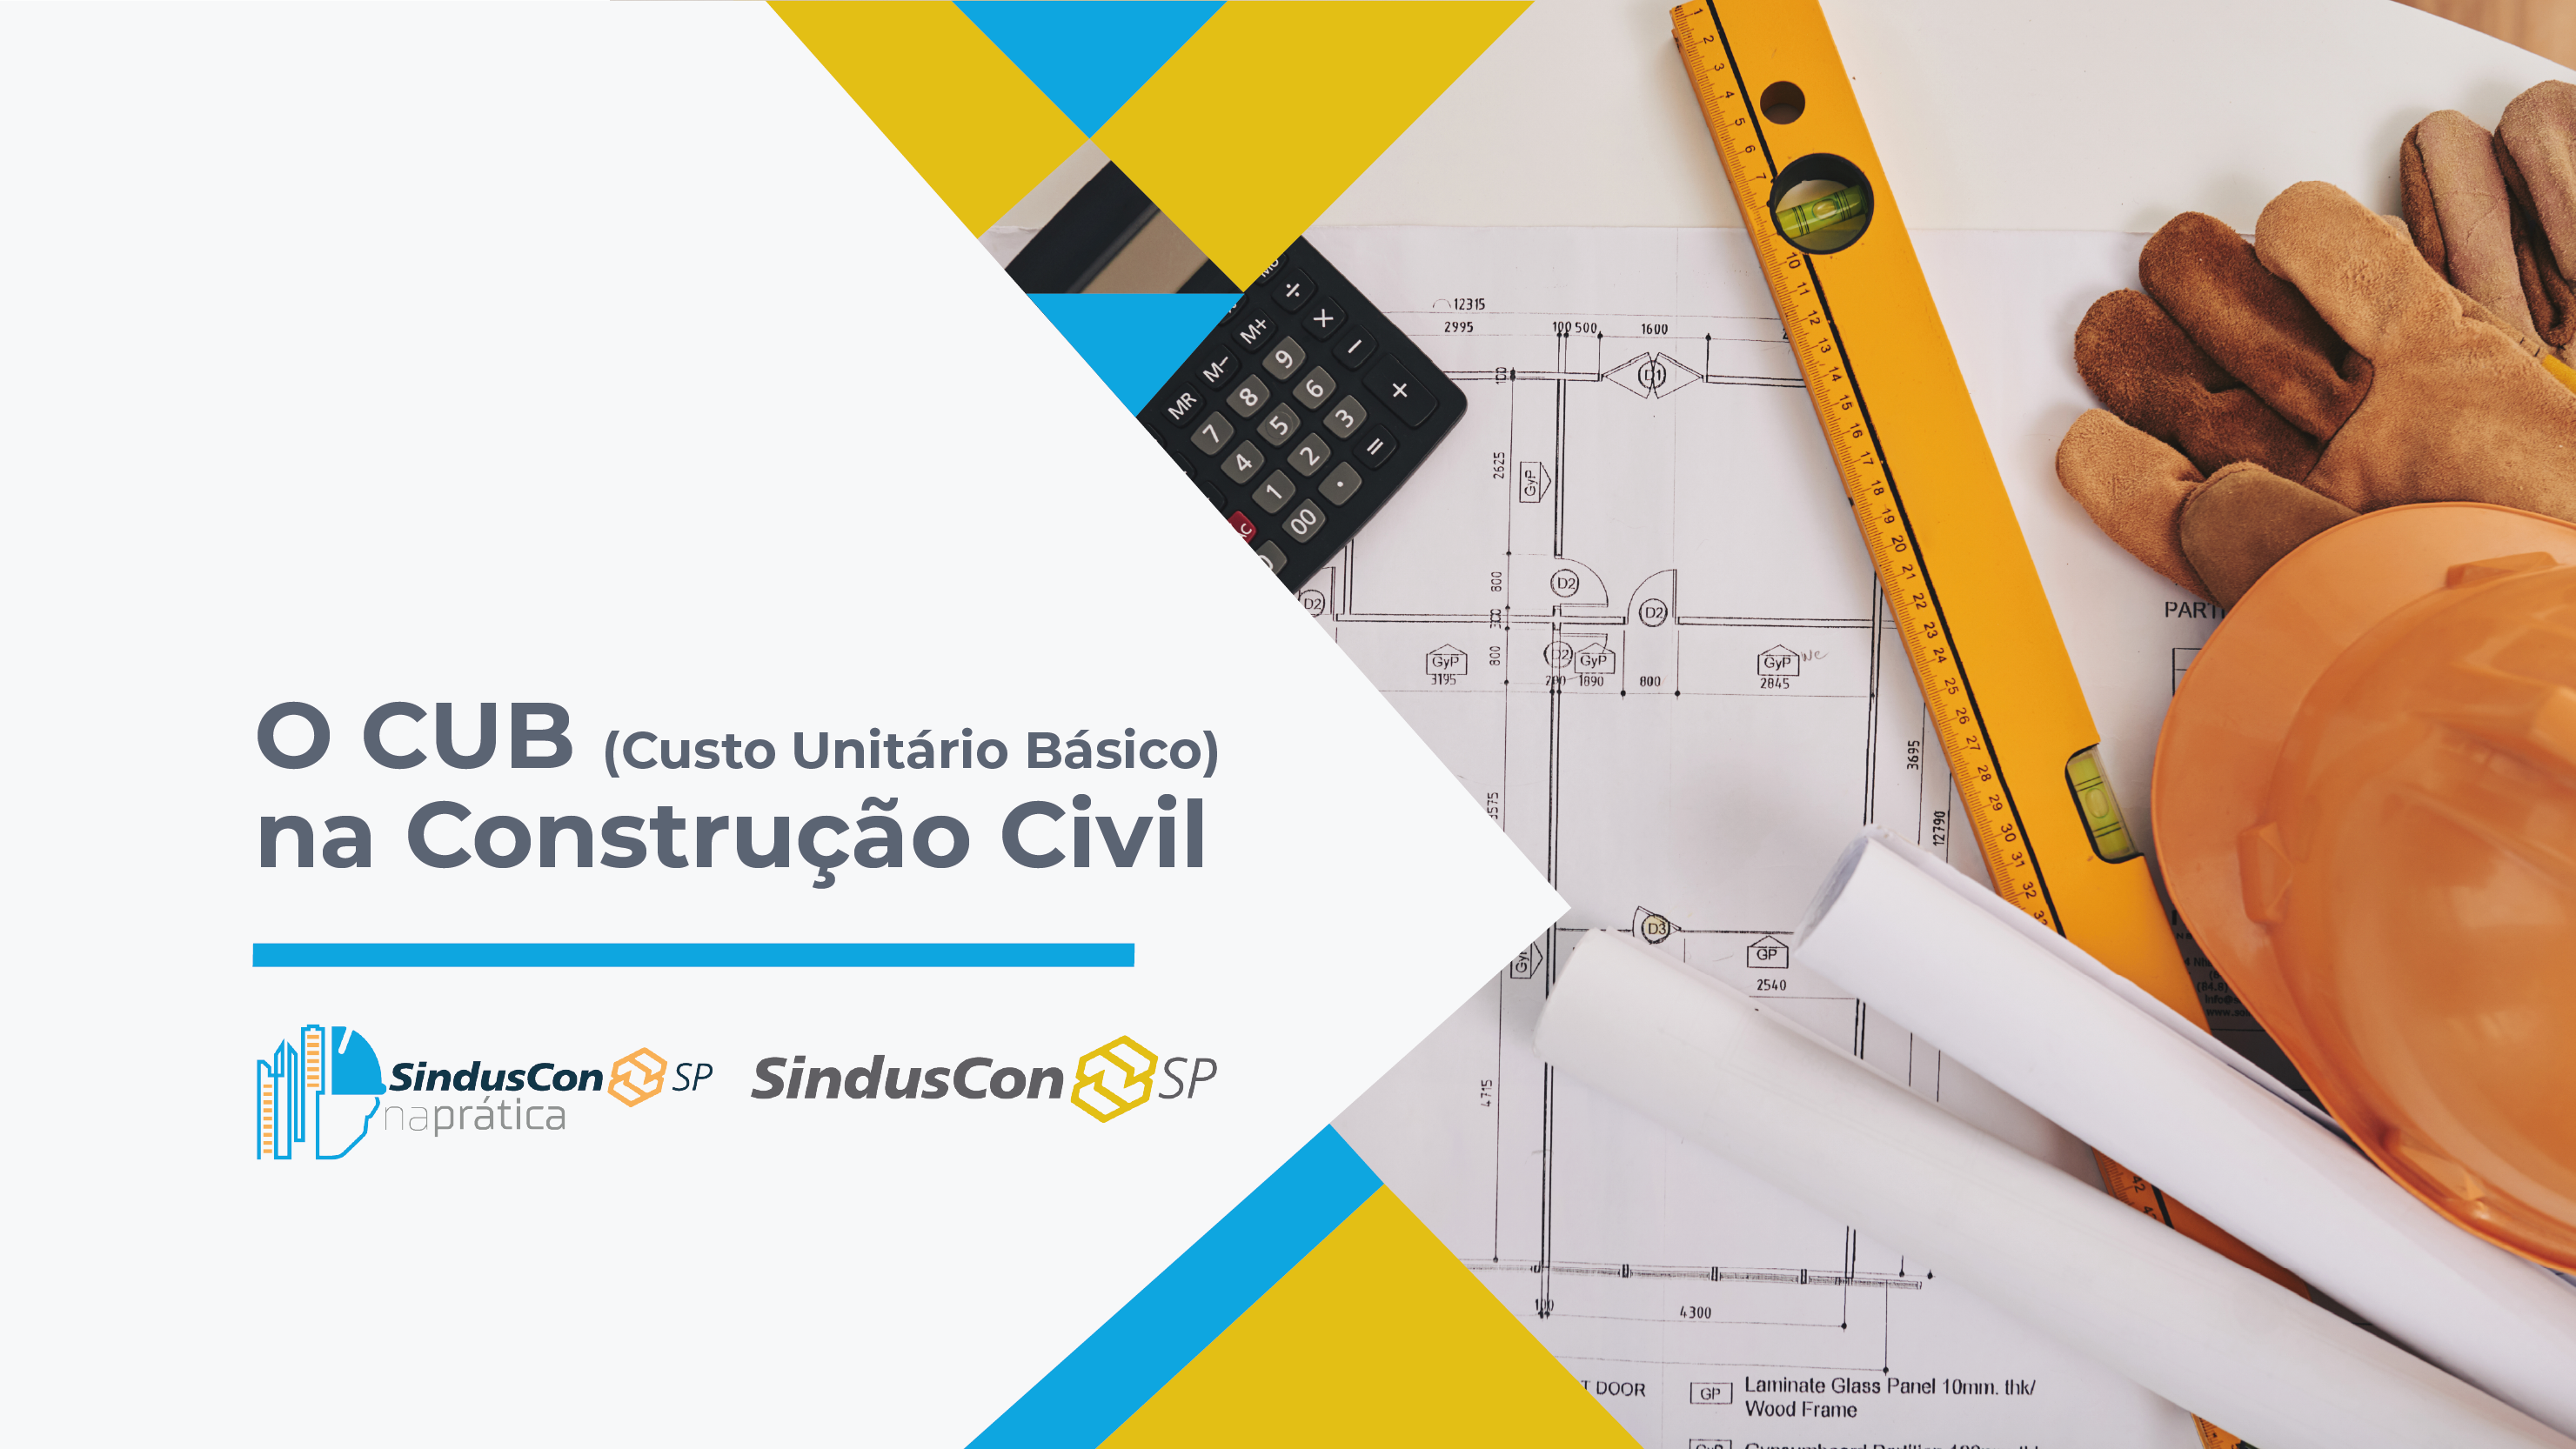 O CUB (Custo Unitário Básico) na Construção Civil